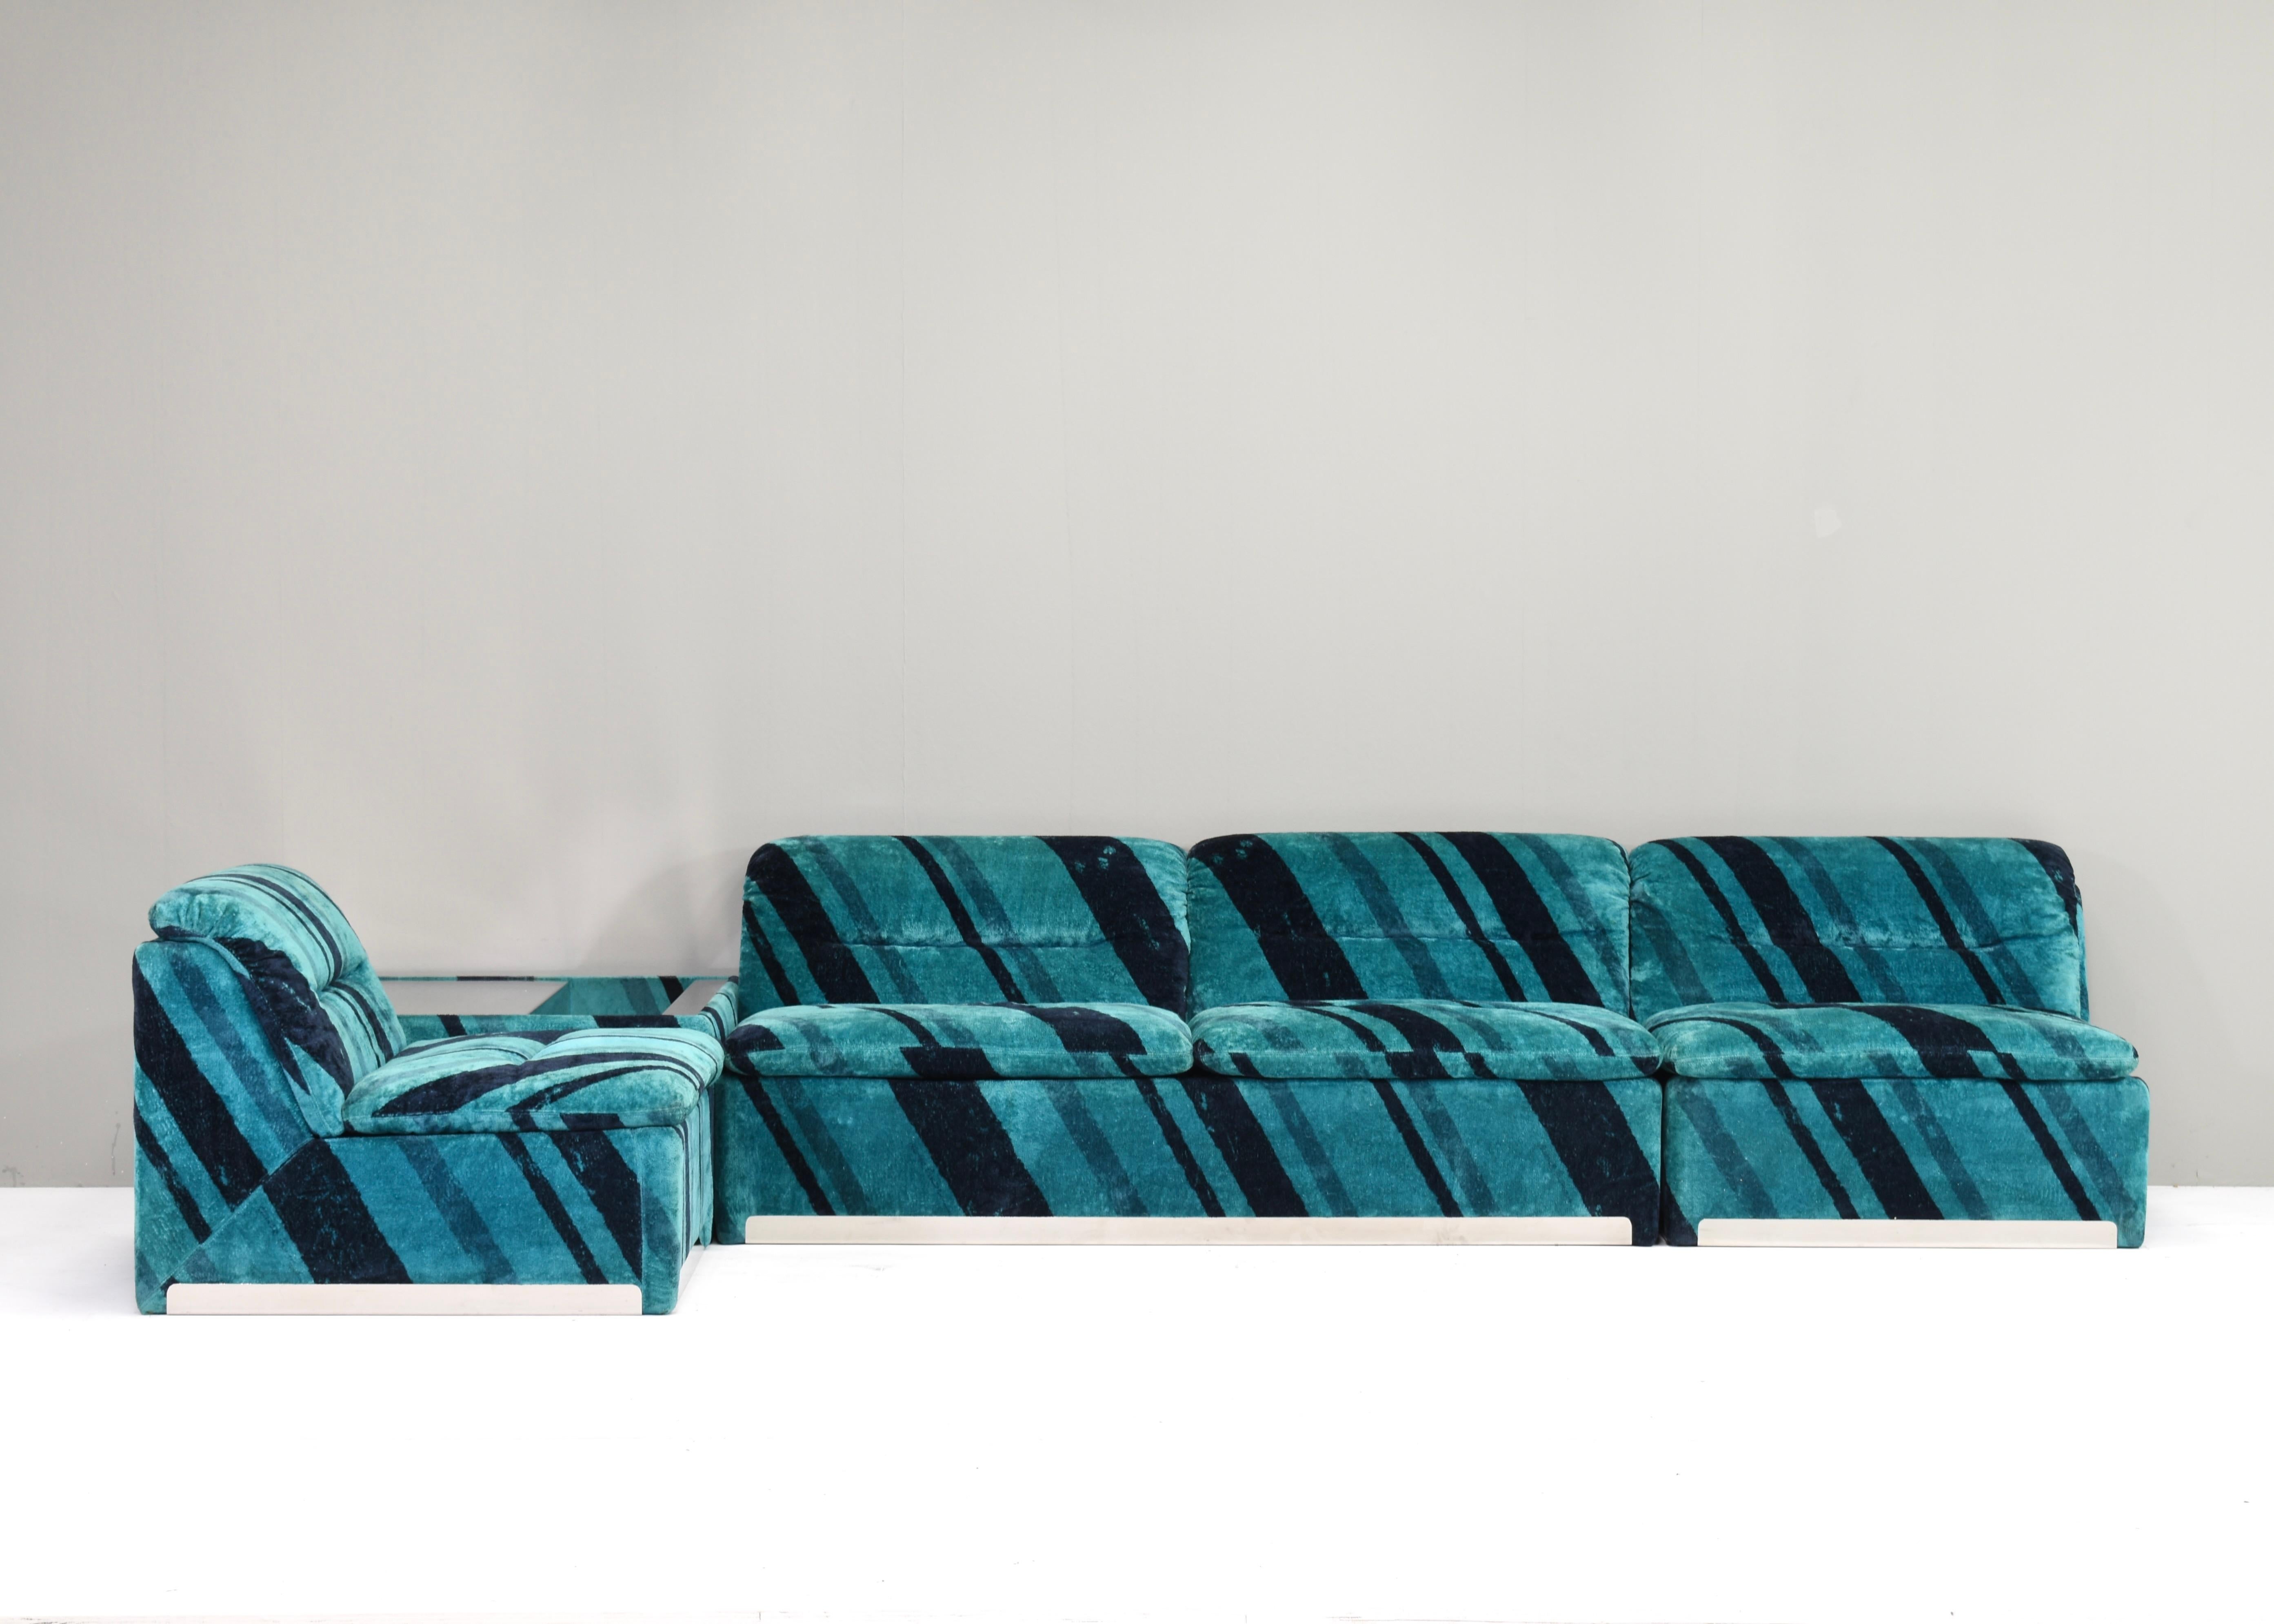 SAPORITI ‘P10 Proposals’ modular sofa set by Giovanni Offredi – Italy, 19 For Sale 4